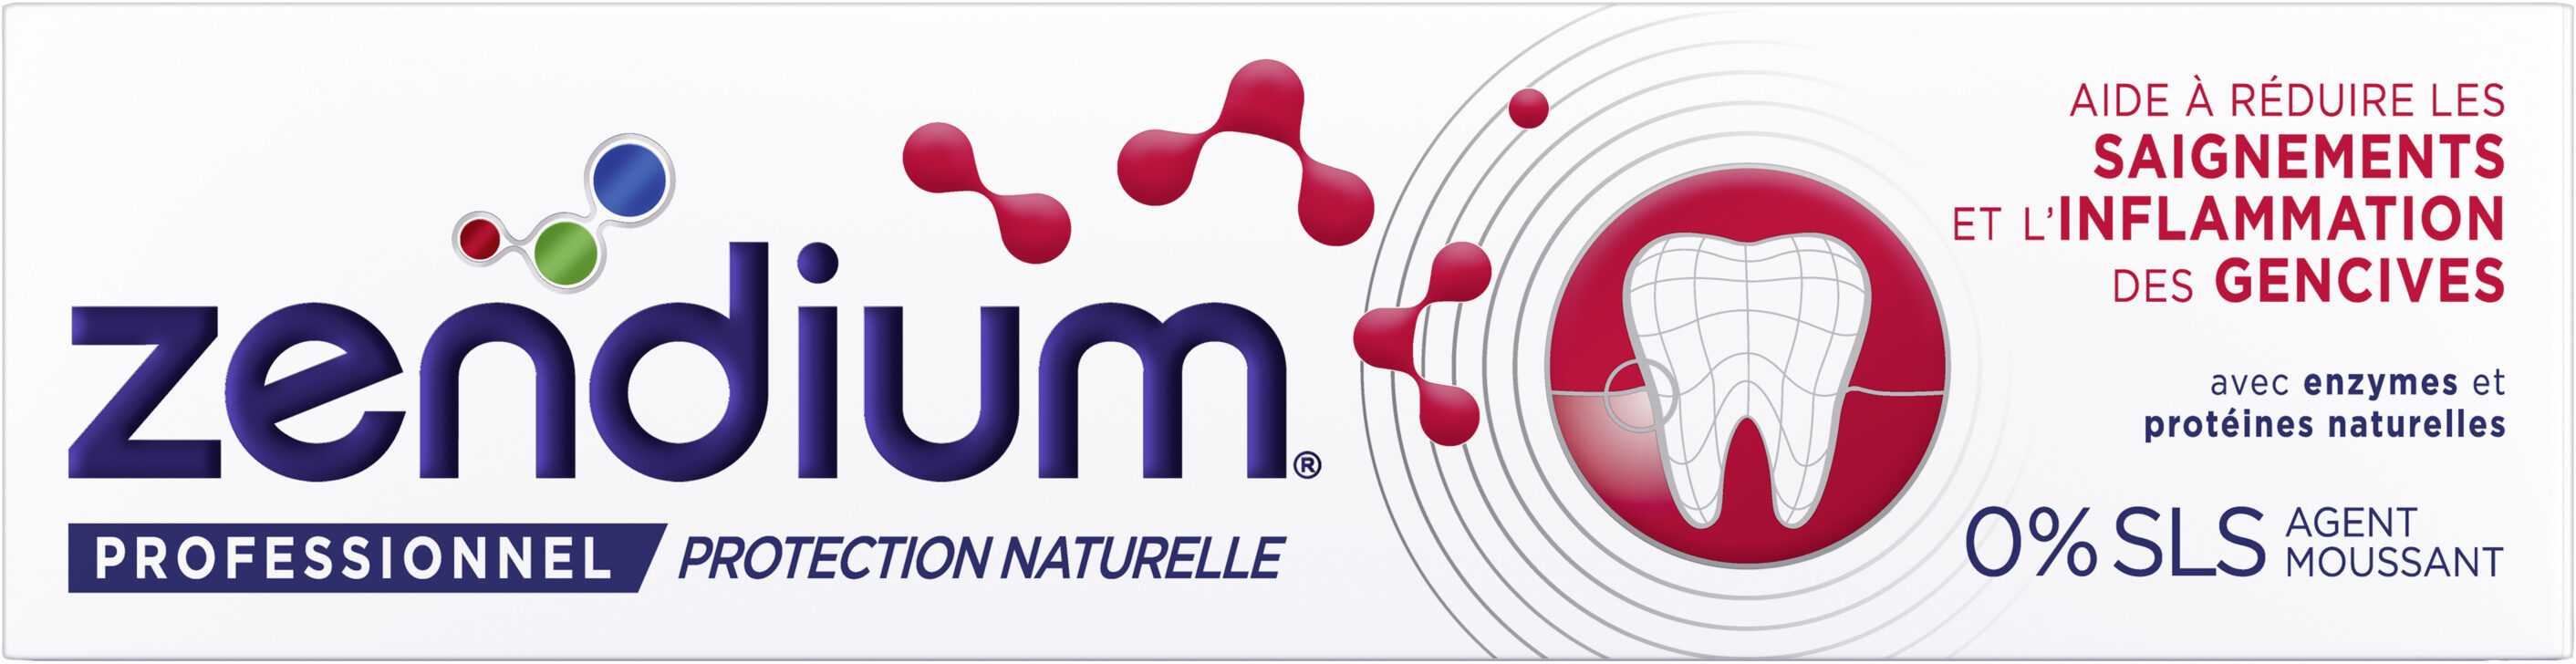 ZENDIUM TOOTHPASTE Expert Gums - Product - fr